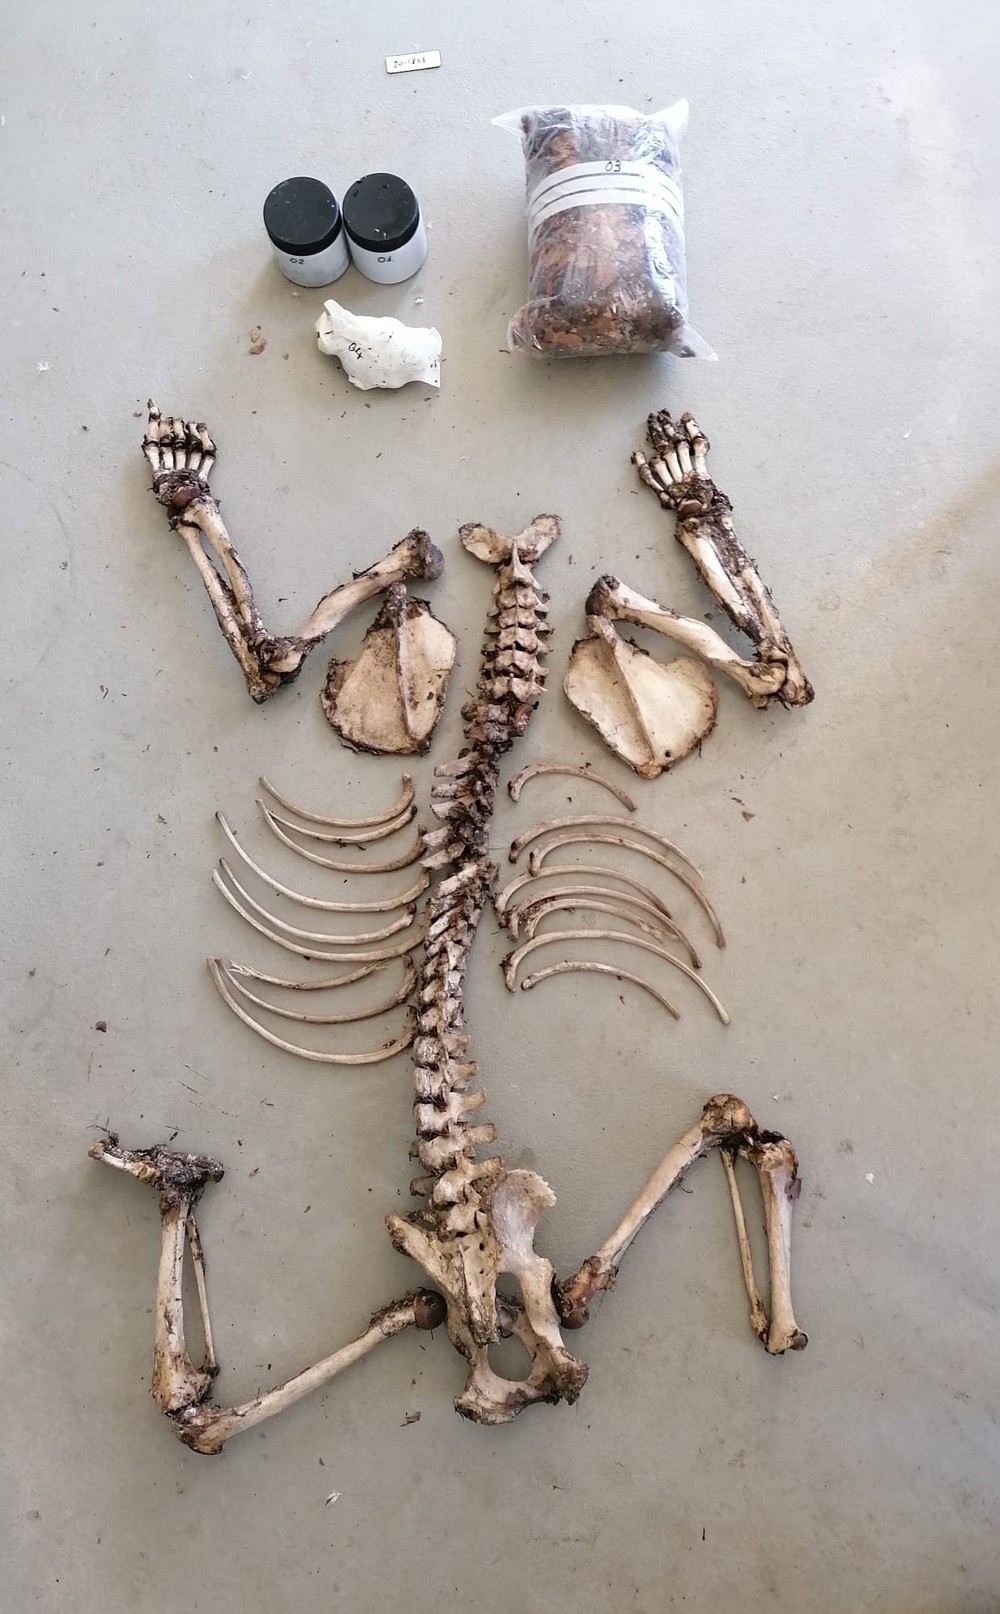 Aparecen los restos esqueletizados de un oso en los Redondos